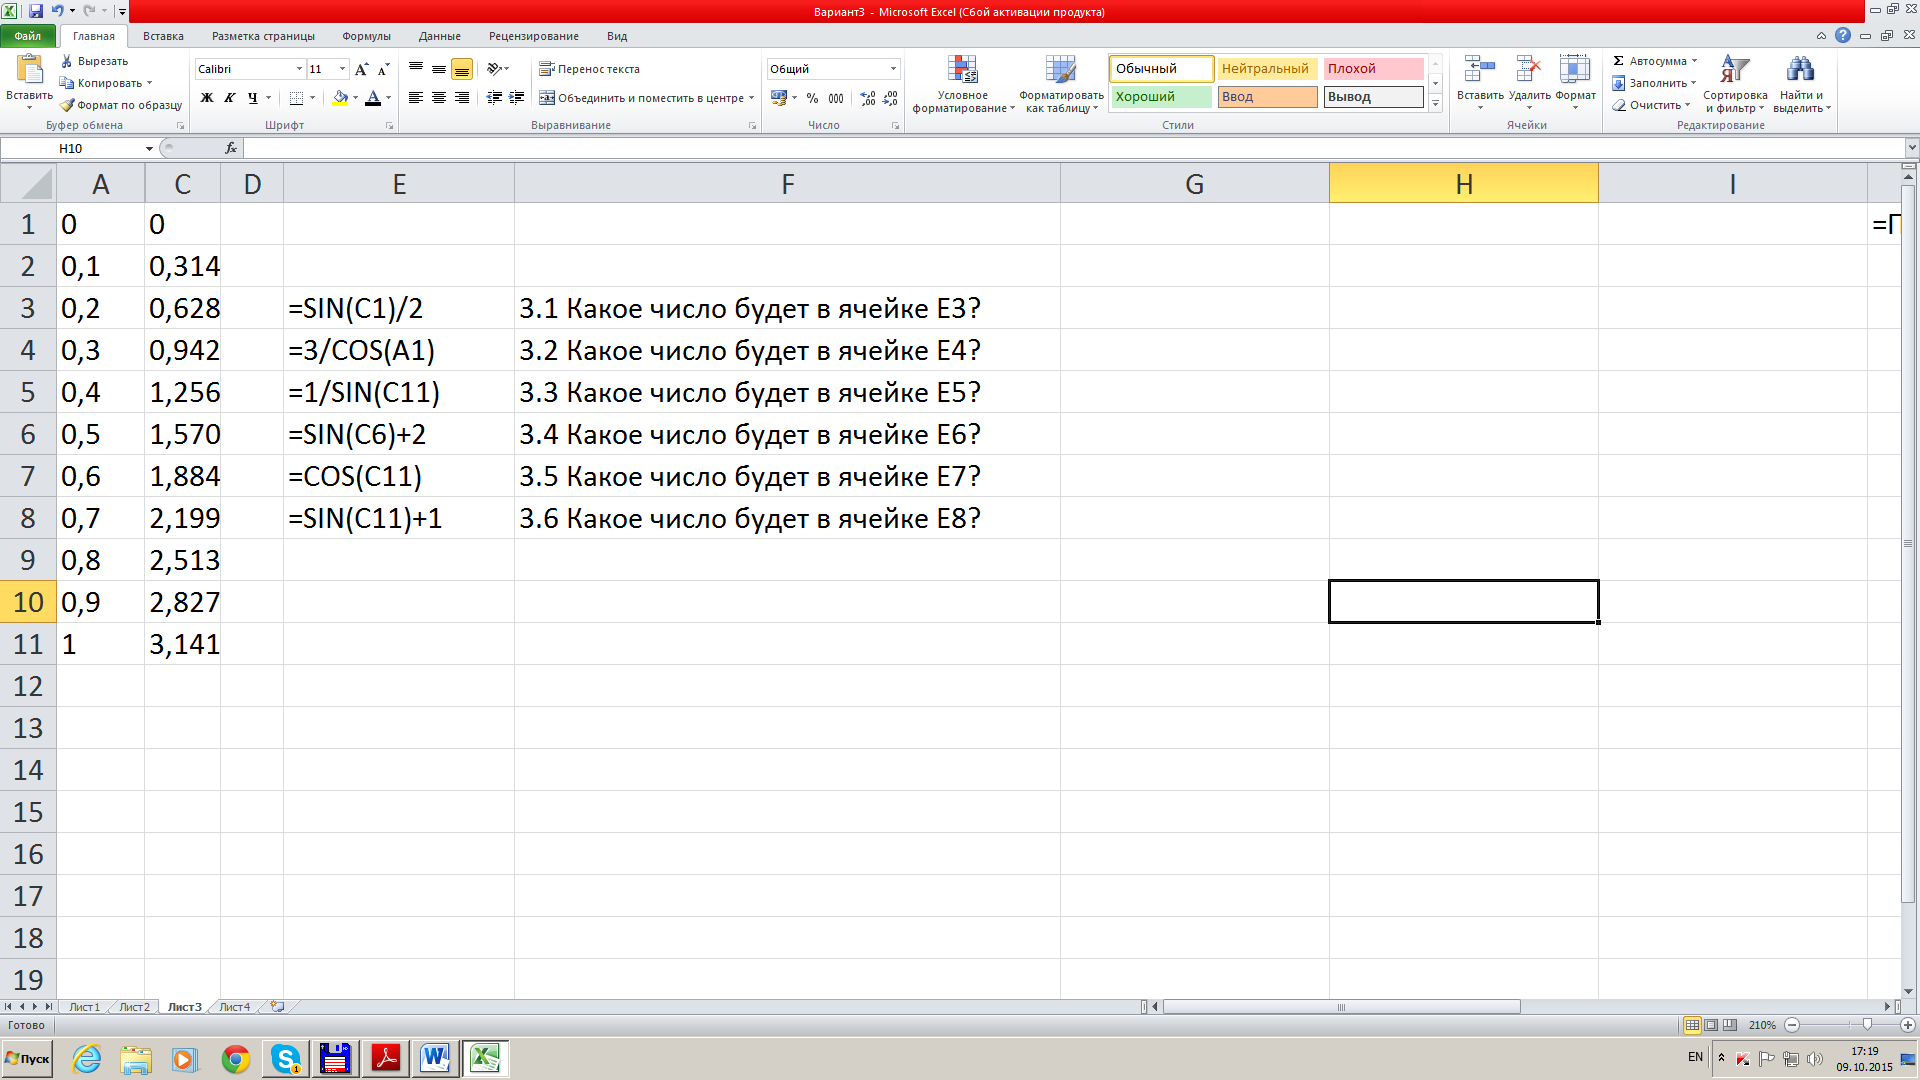 Тест по теме Использование адресных ссылок в Excel